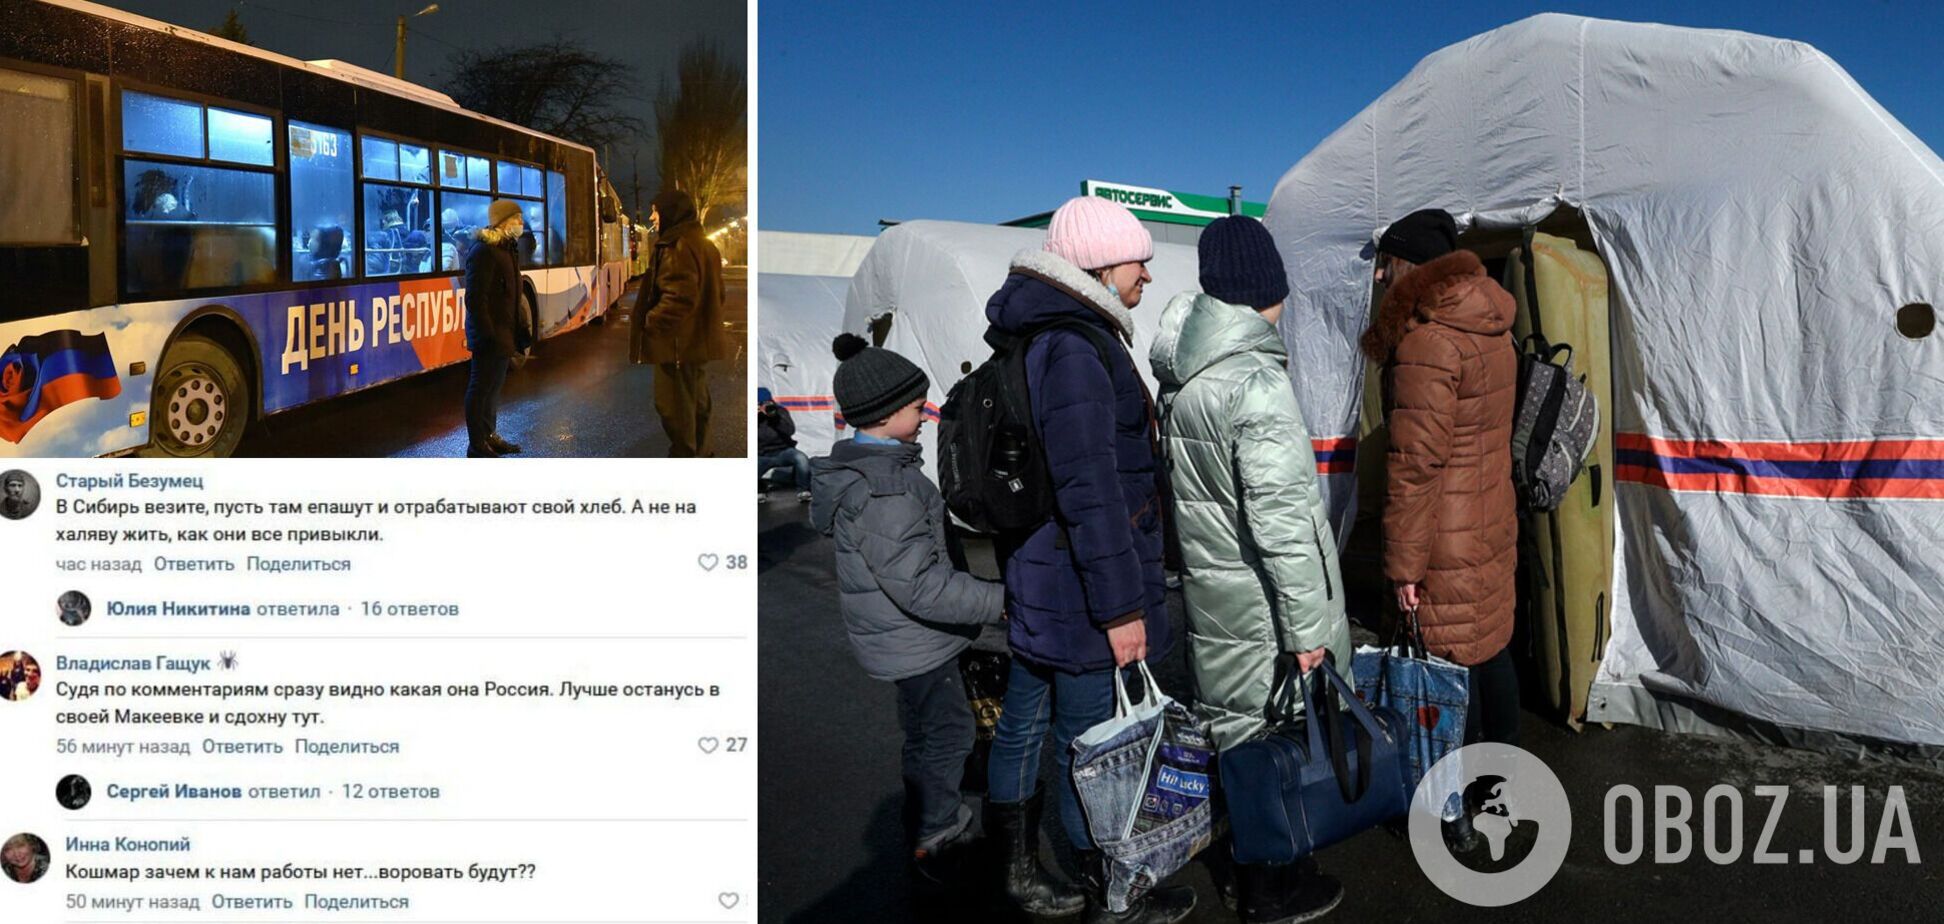 'Валите обратно': в России возмущены приездом 'беженцев' из ОРДЛО и называют людей 'мусором'